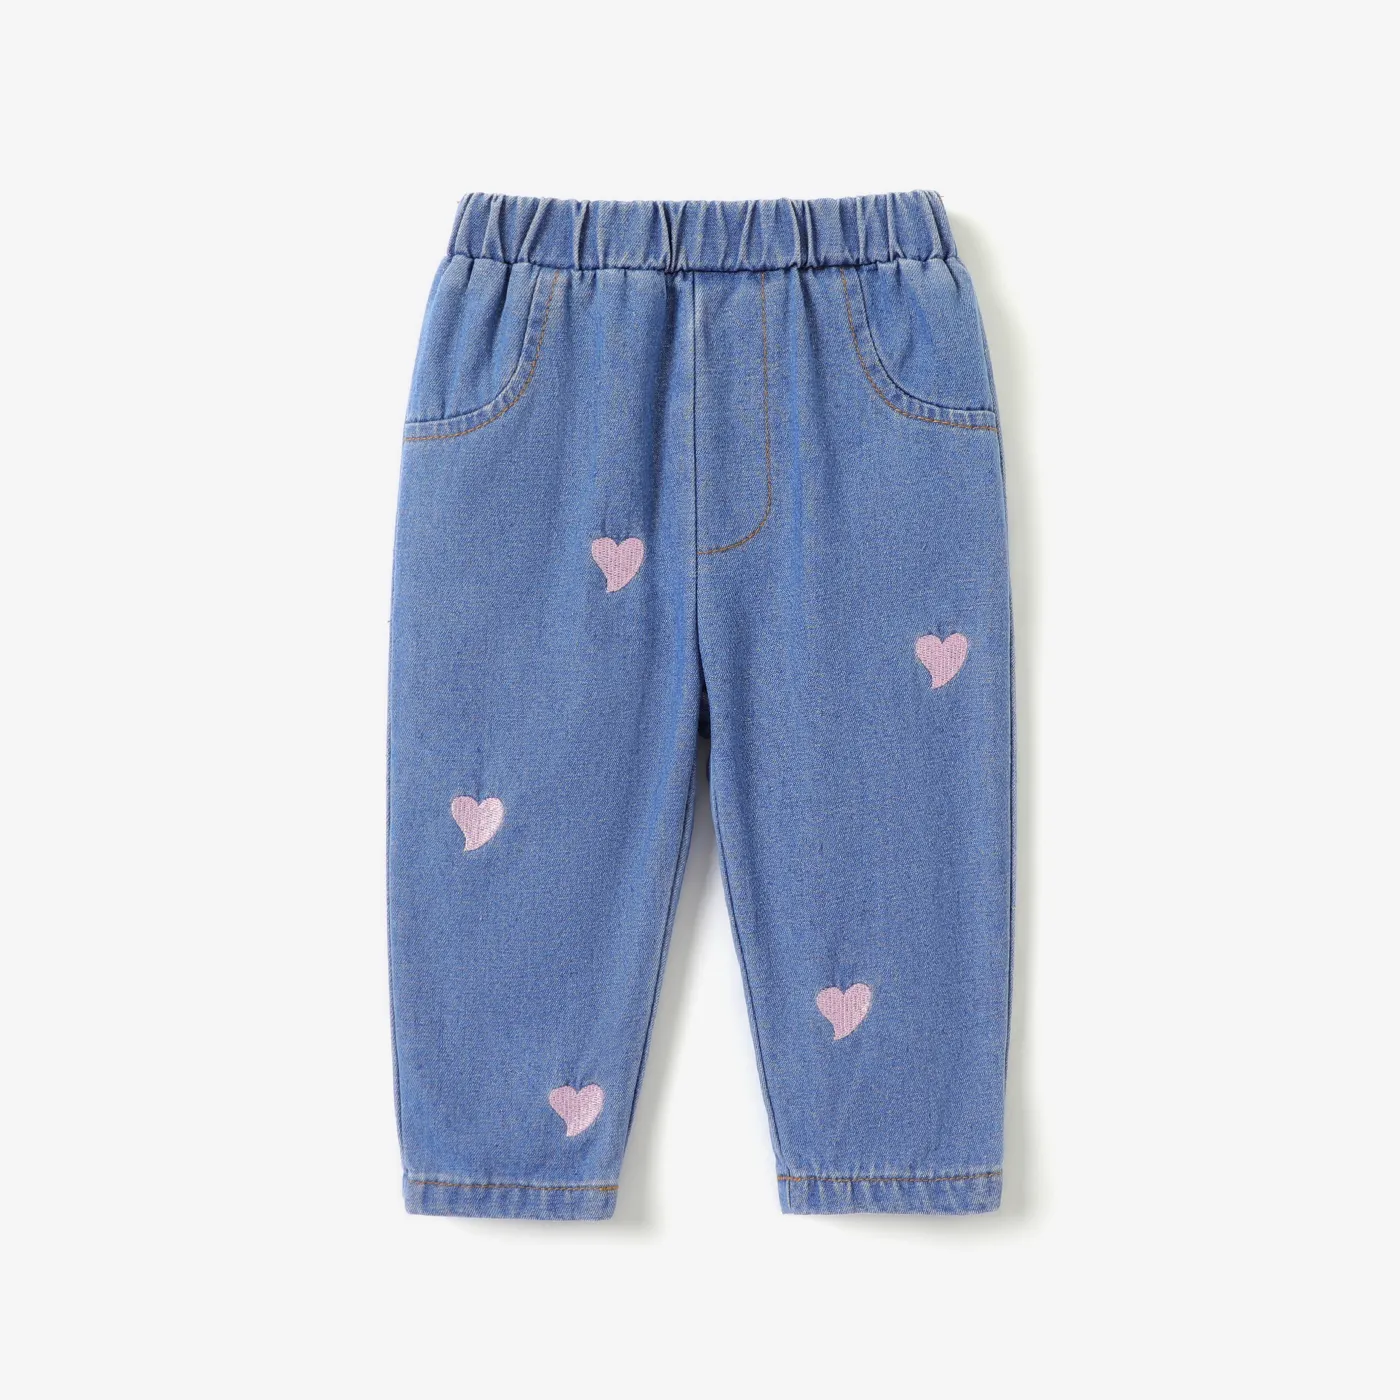 Pantalon Denim Bébé Fille 100% Coton Brodé Coeur Jeans